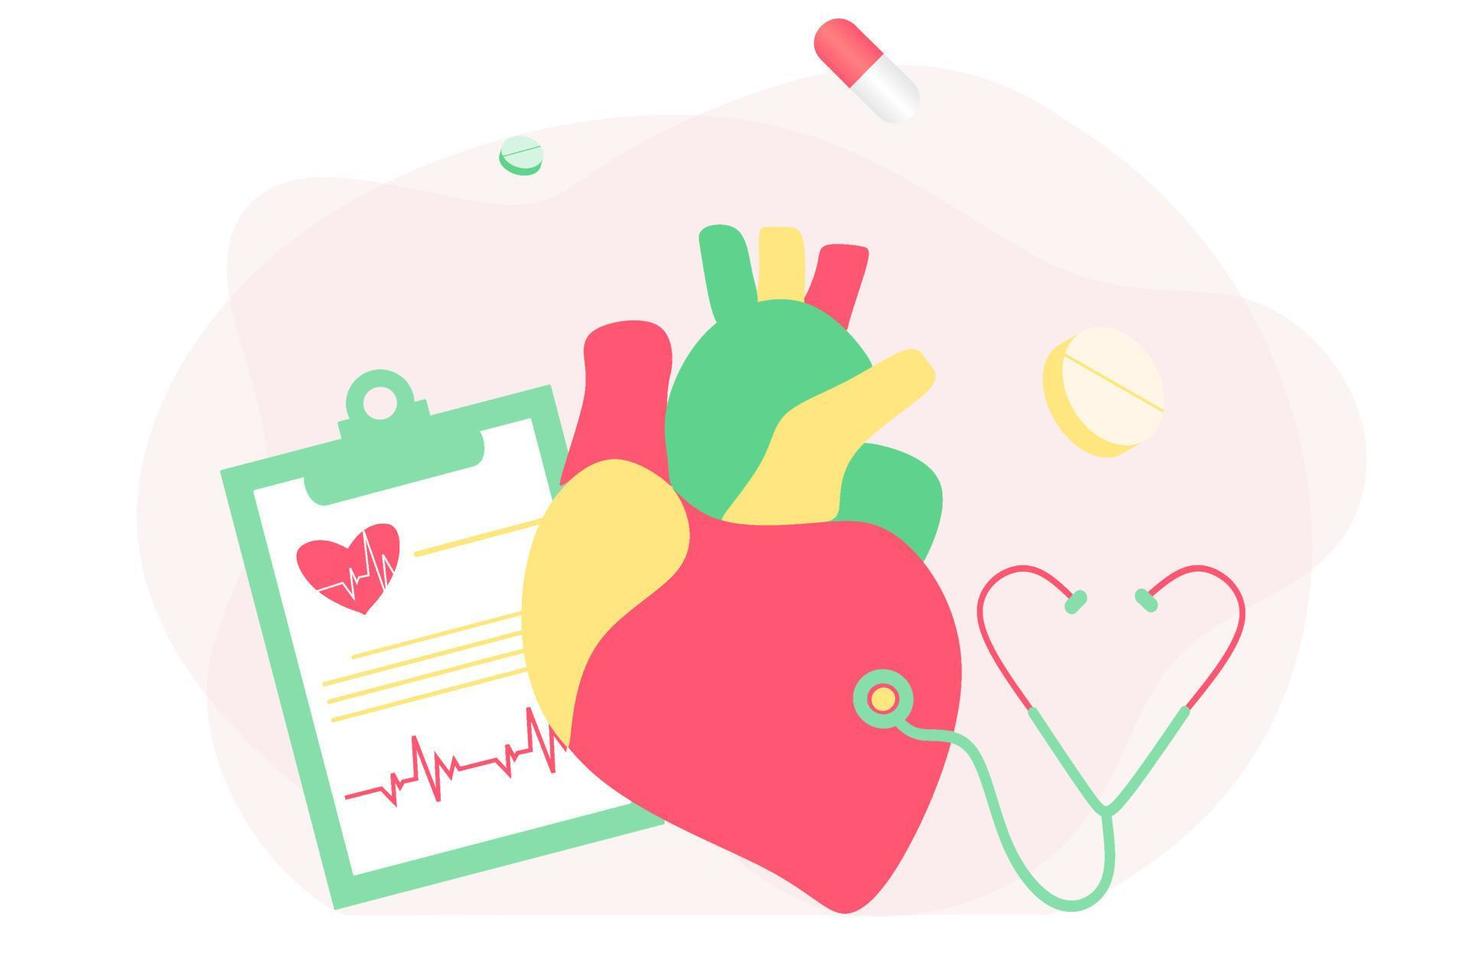 farmaci per il cuore moderno, concetto di ricerca sulle malattie cardiache. cardiologo che studia il modello del grande cuore, i farmaci e il diagramma del battito cardiaco. illustrazione vettoriale sistema cardiovascolare, colesterolo, visita medica